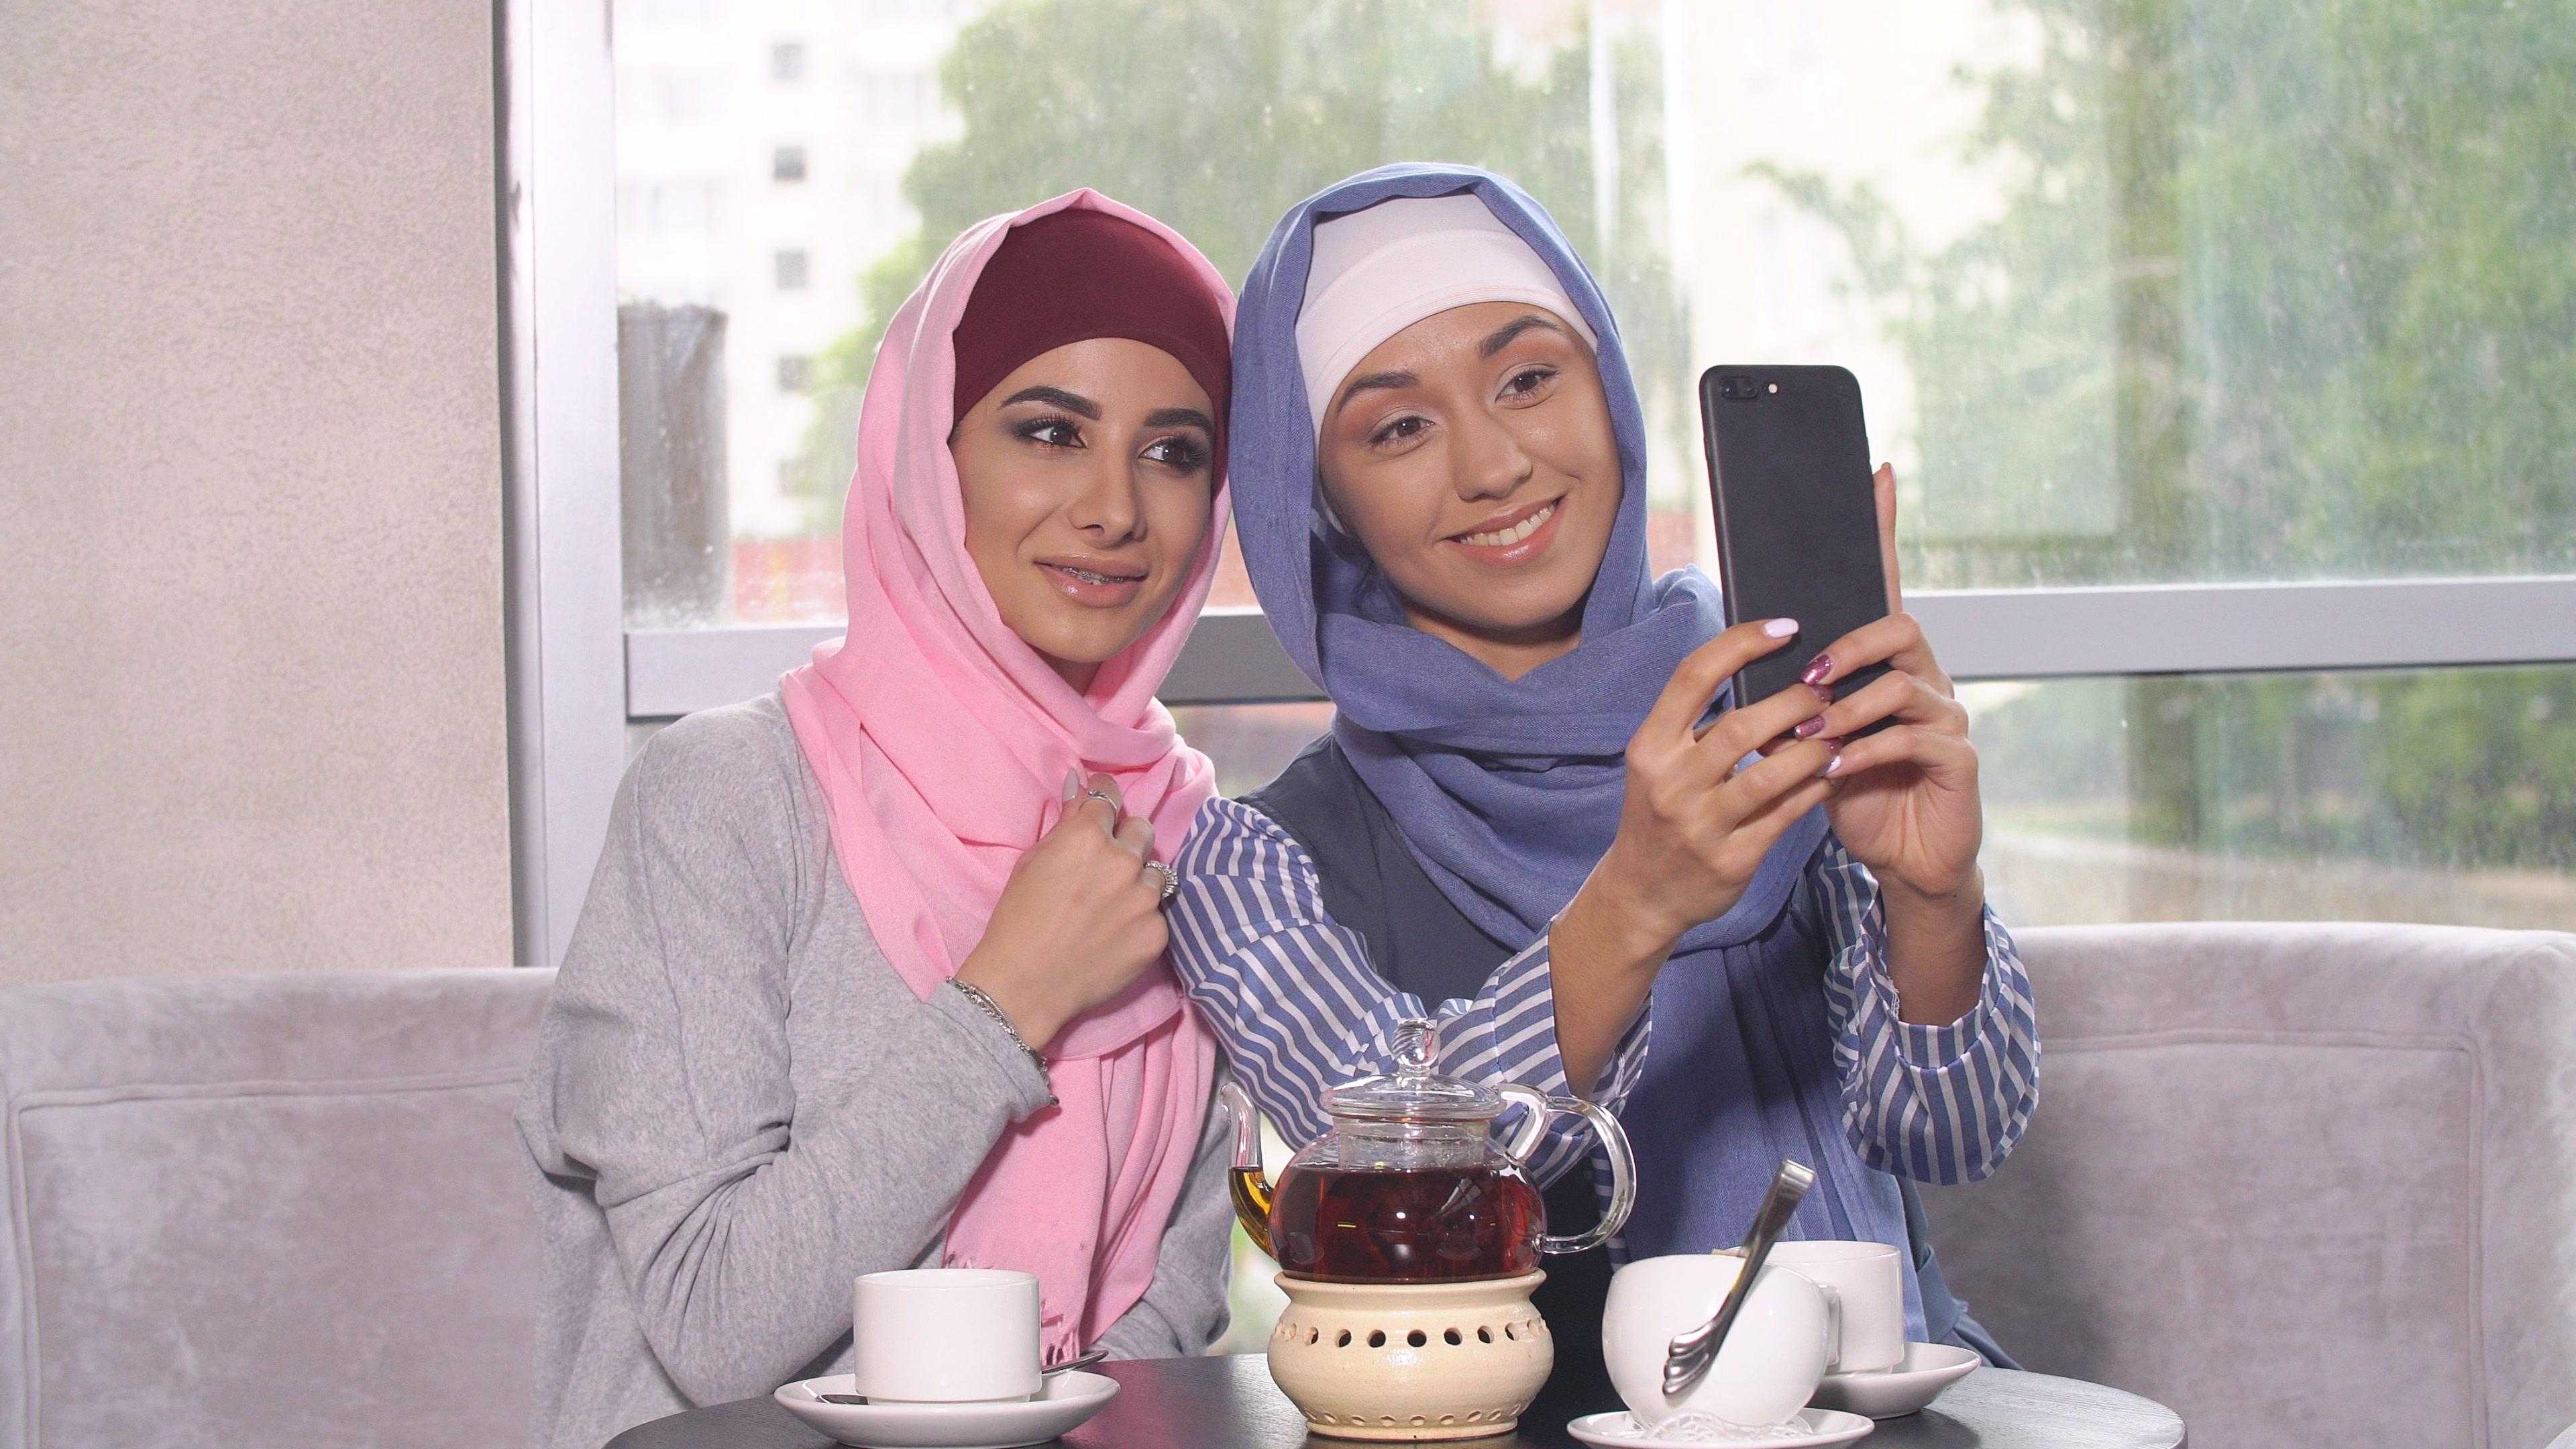 Muslim Girl Wallpapers For Mobile Phones - Woman - HD Wallpaper 